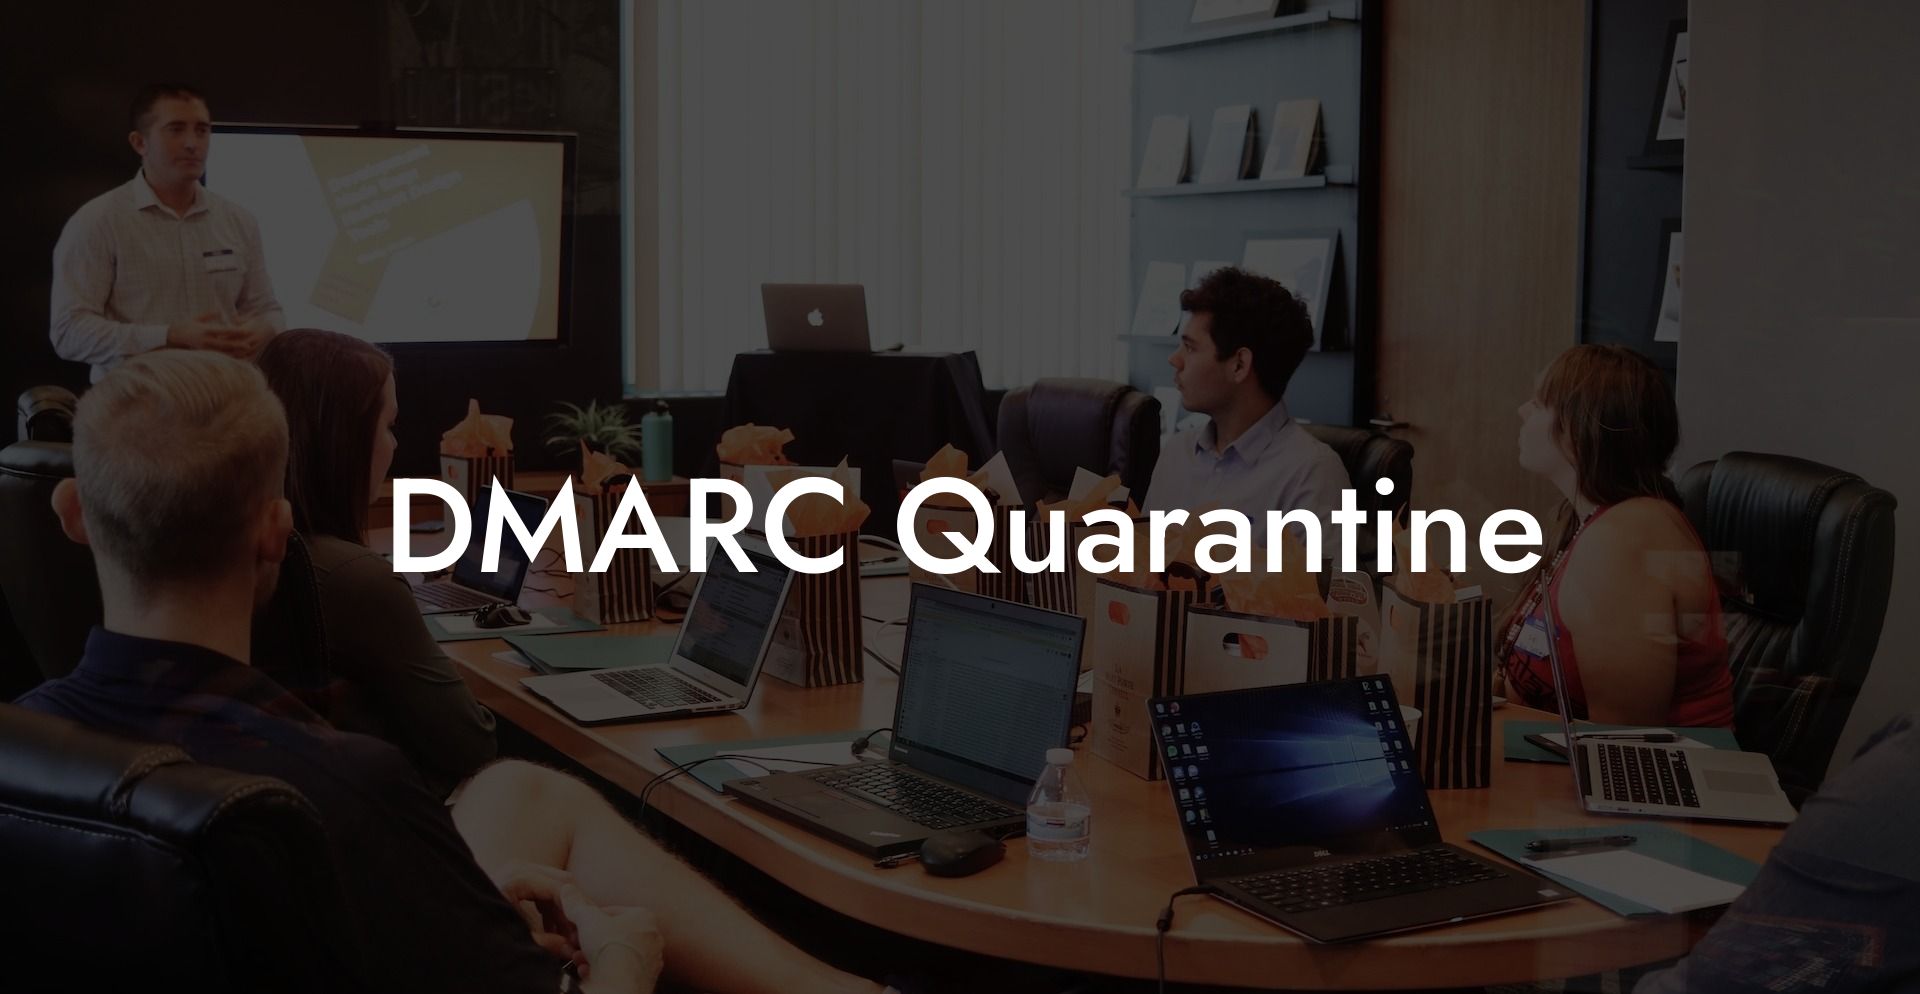 DMARC Quarantine